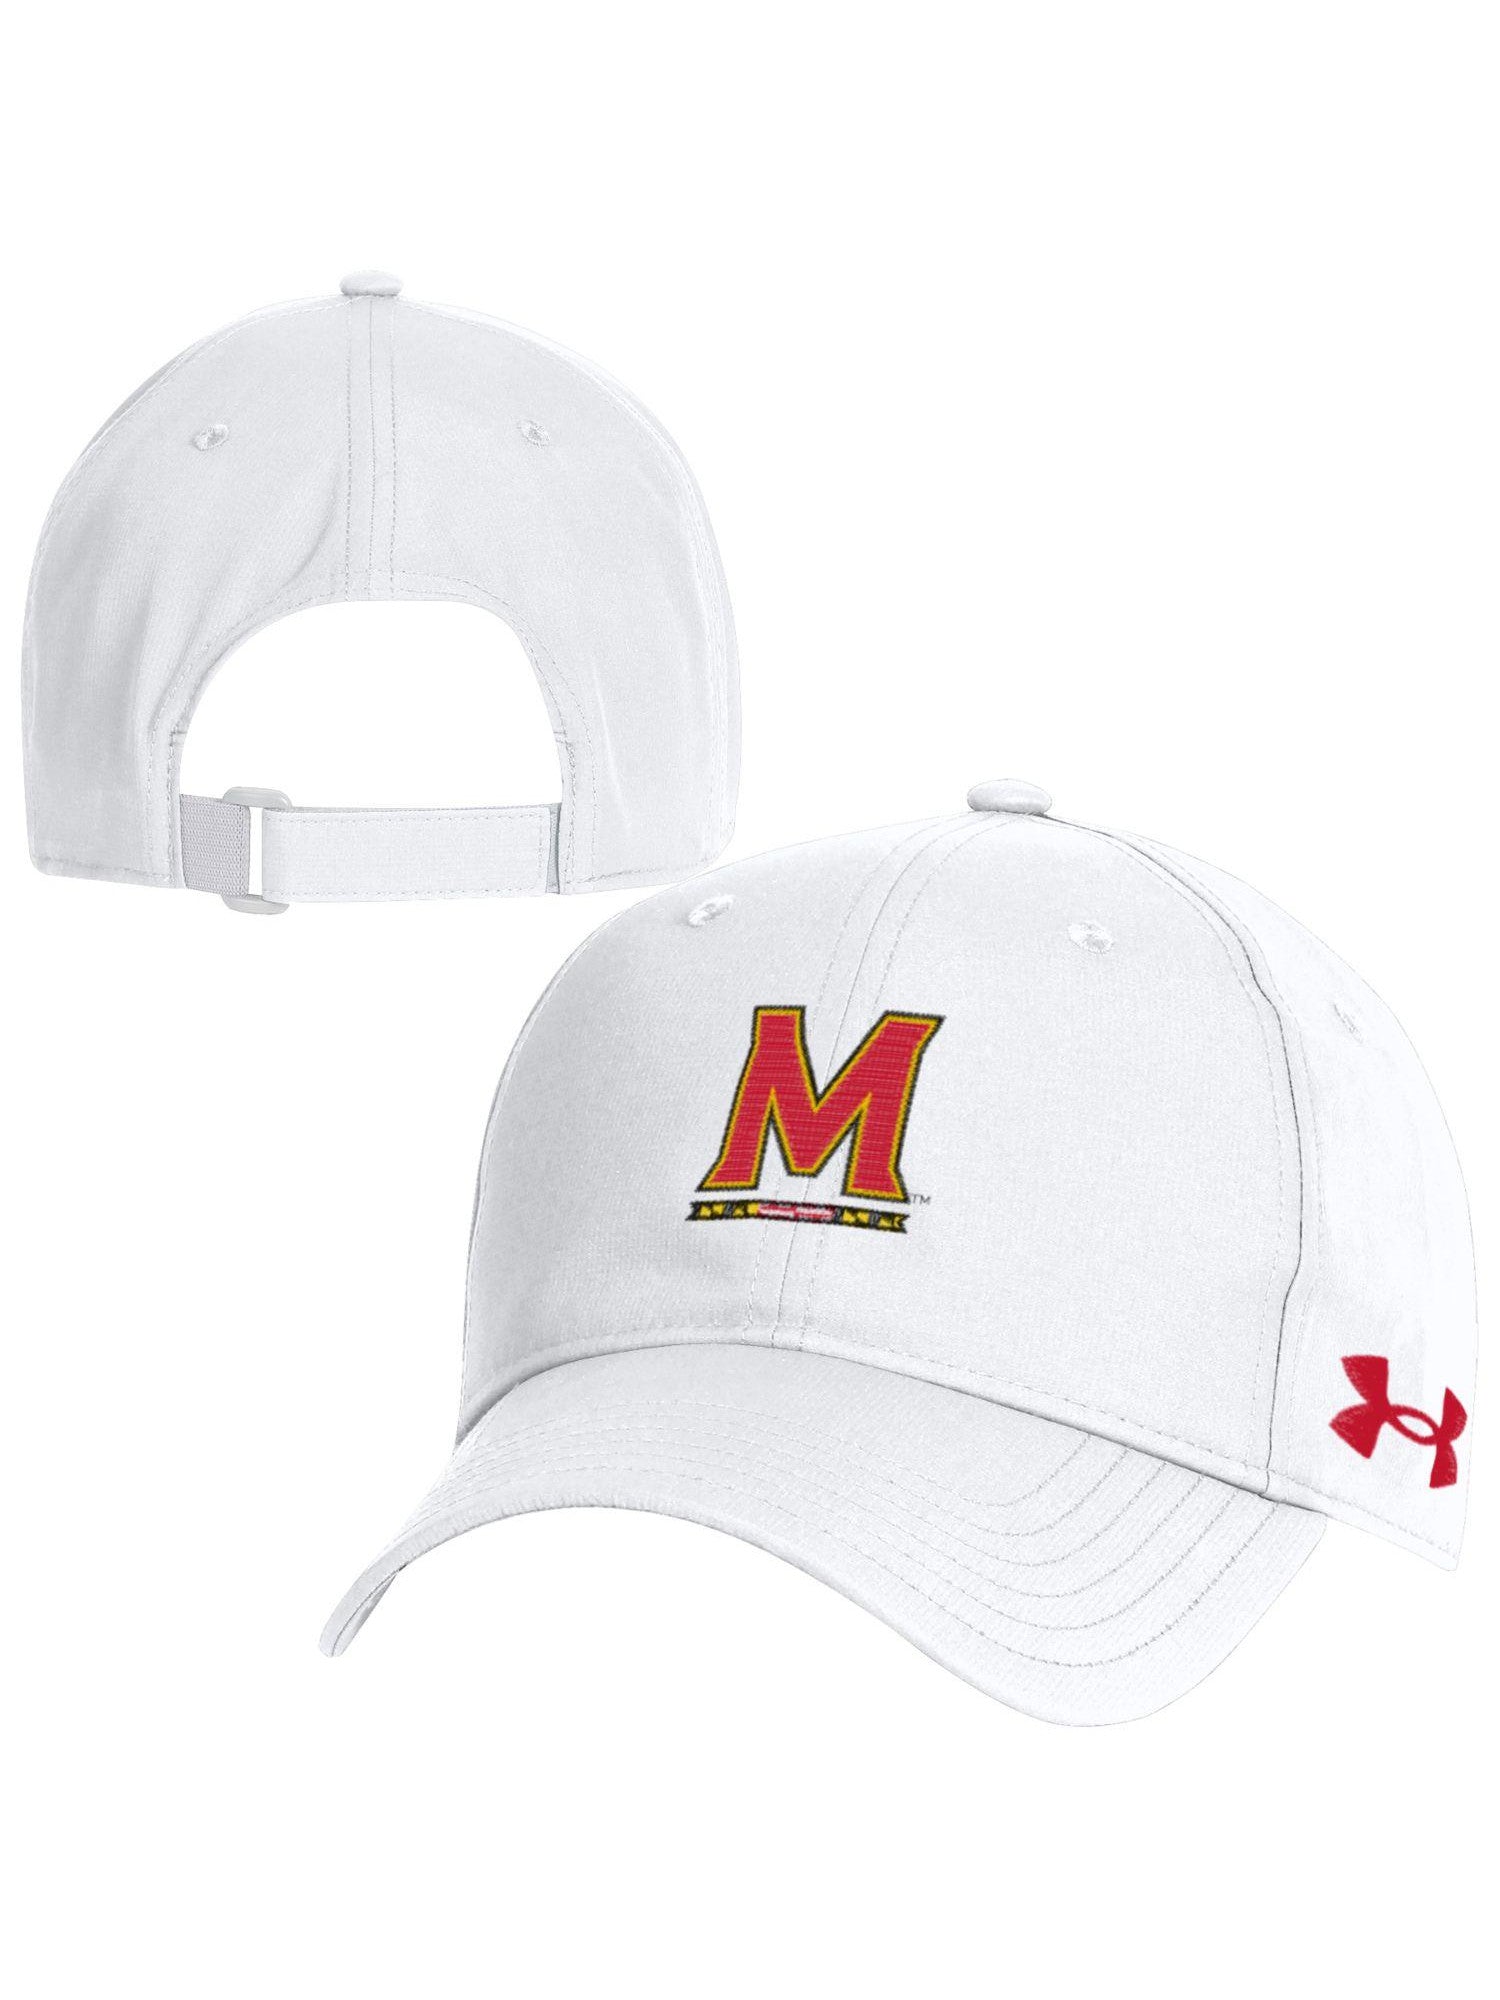 Under Armor University of Maryland Baseball Cap (White) – Maryland Gifts